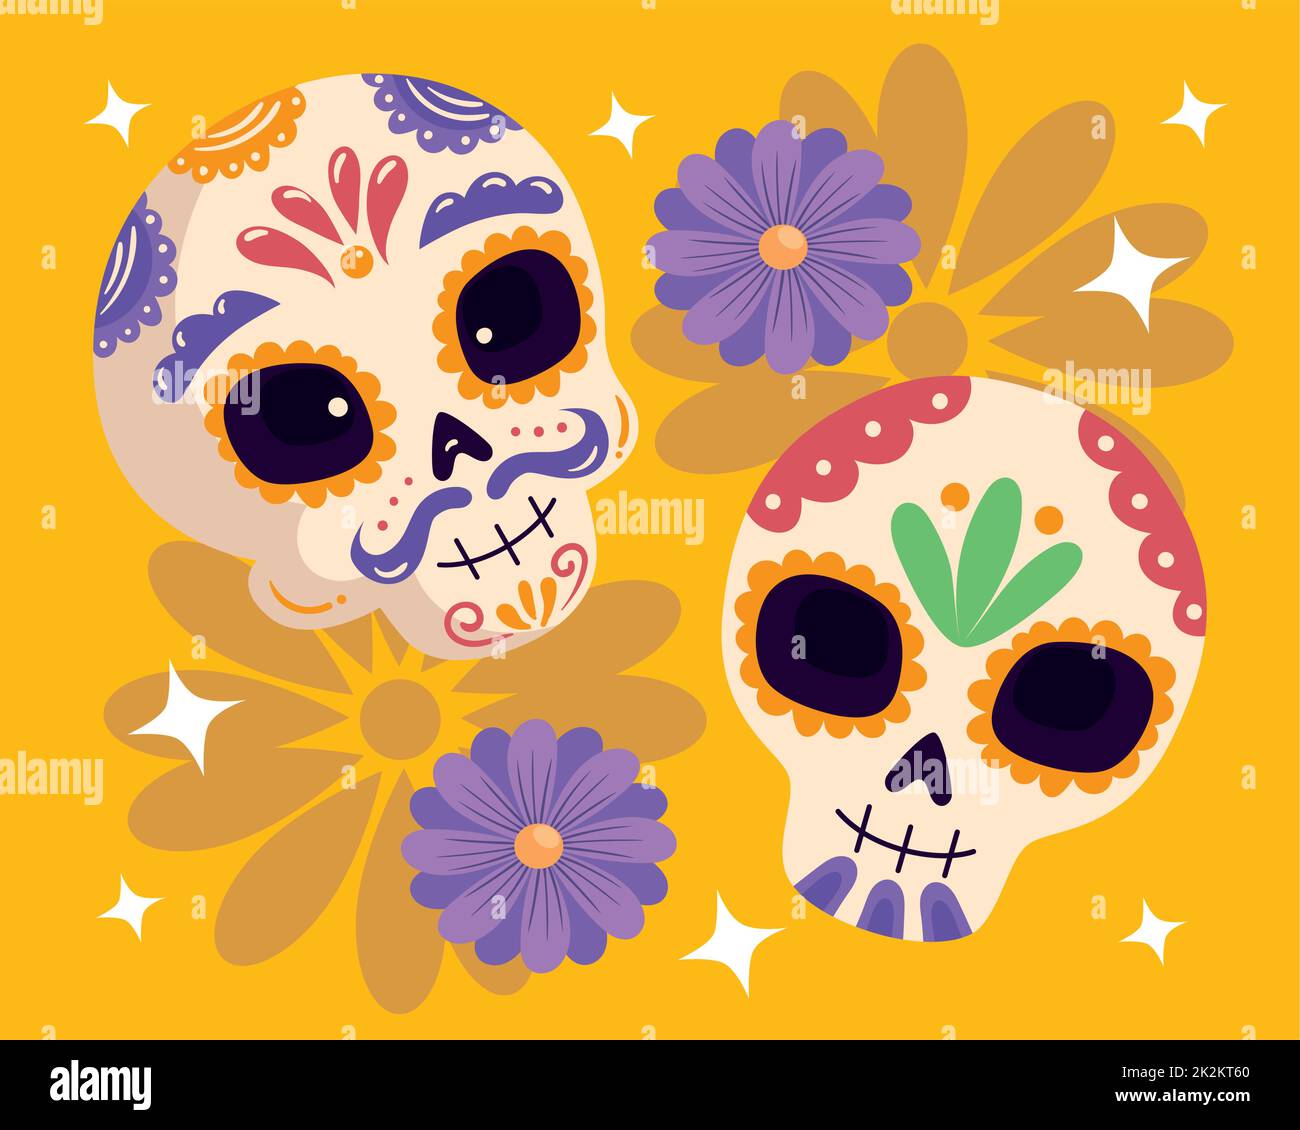 dia de los muertos skulls with flowers Stock Vector